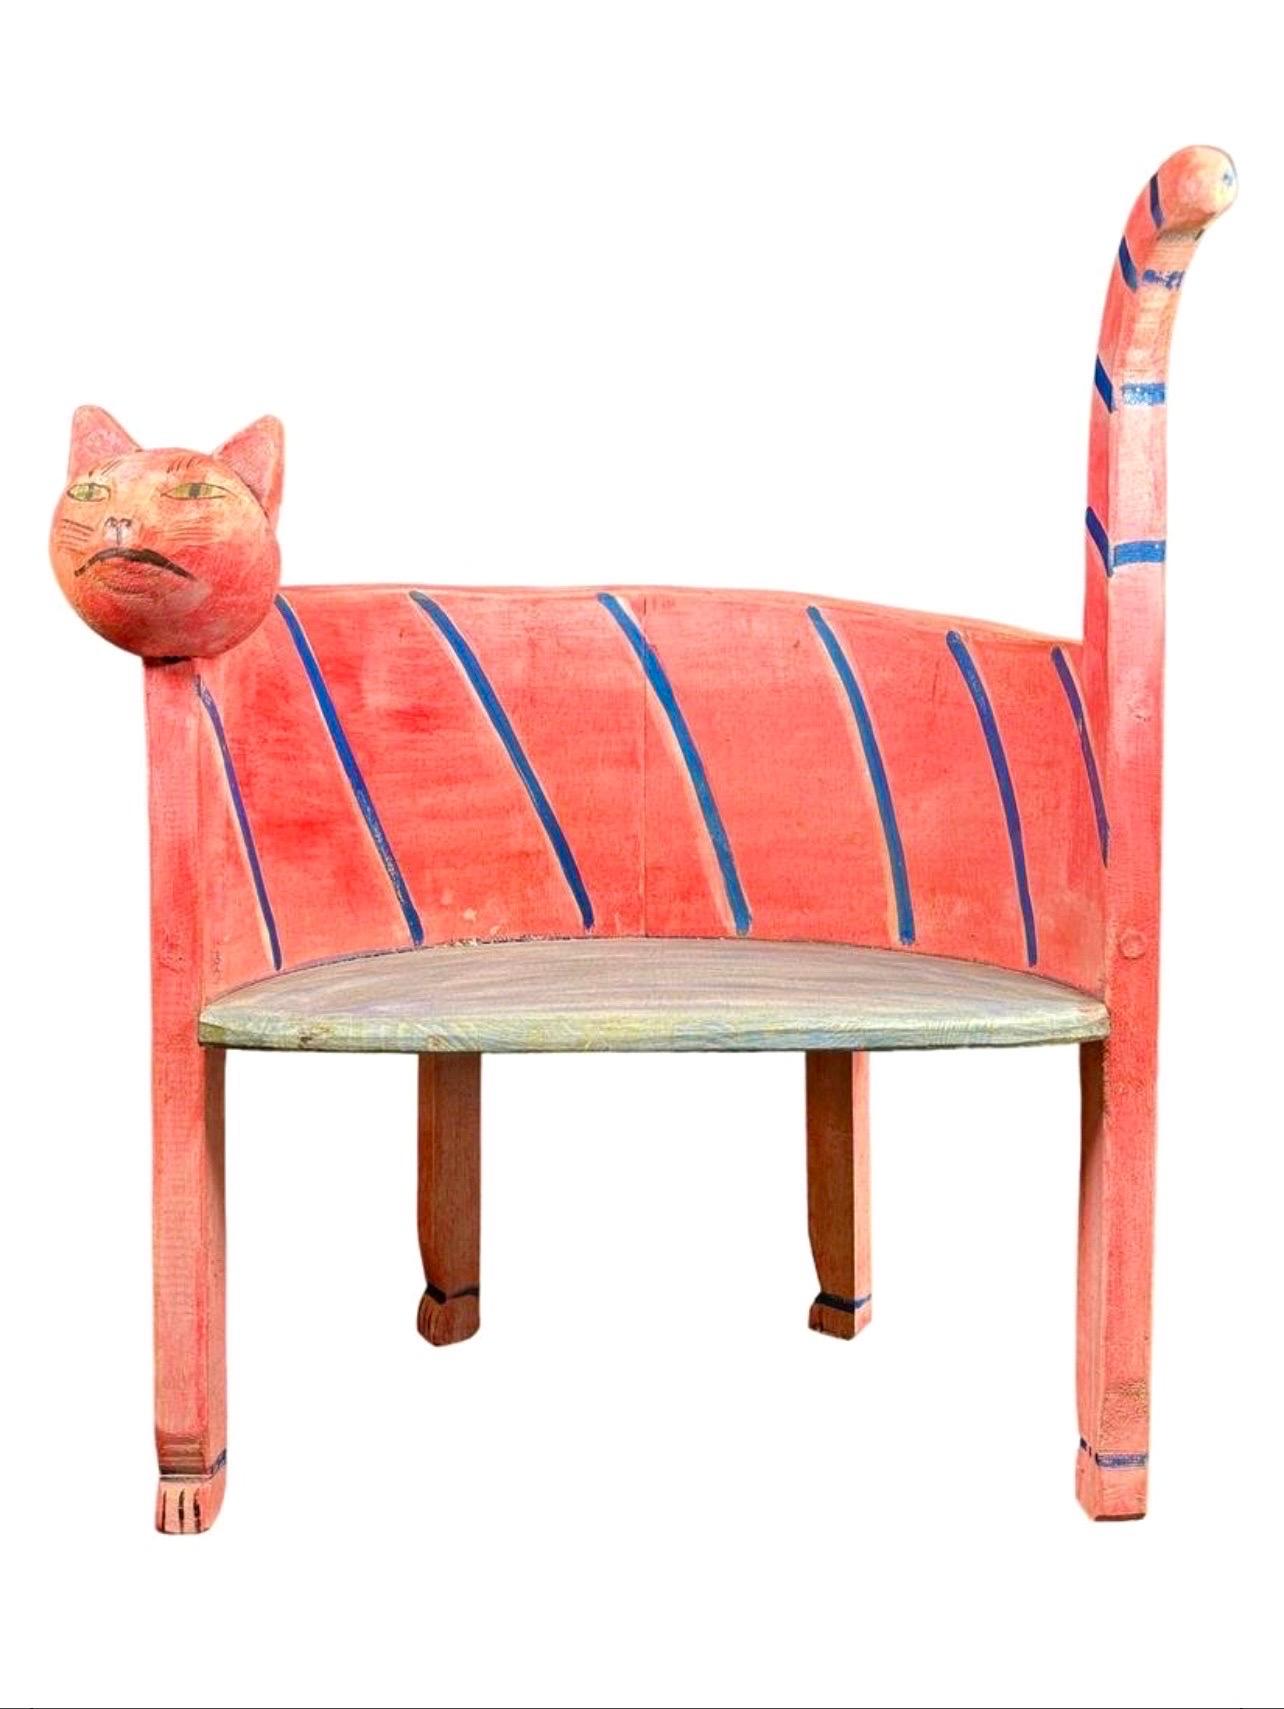 Gerard Rigot (France, 1929-) 
Animeubles, chaise d'enfant
Circa, 1980's
Art populaire, chaise sculptée à la main en forme de chat. 
Signé à la main sur le fond
Approuvé par le Musée des Arts Décoratifs, Paris. 
Dimensions : Dimensions : 23" x 19" x